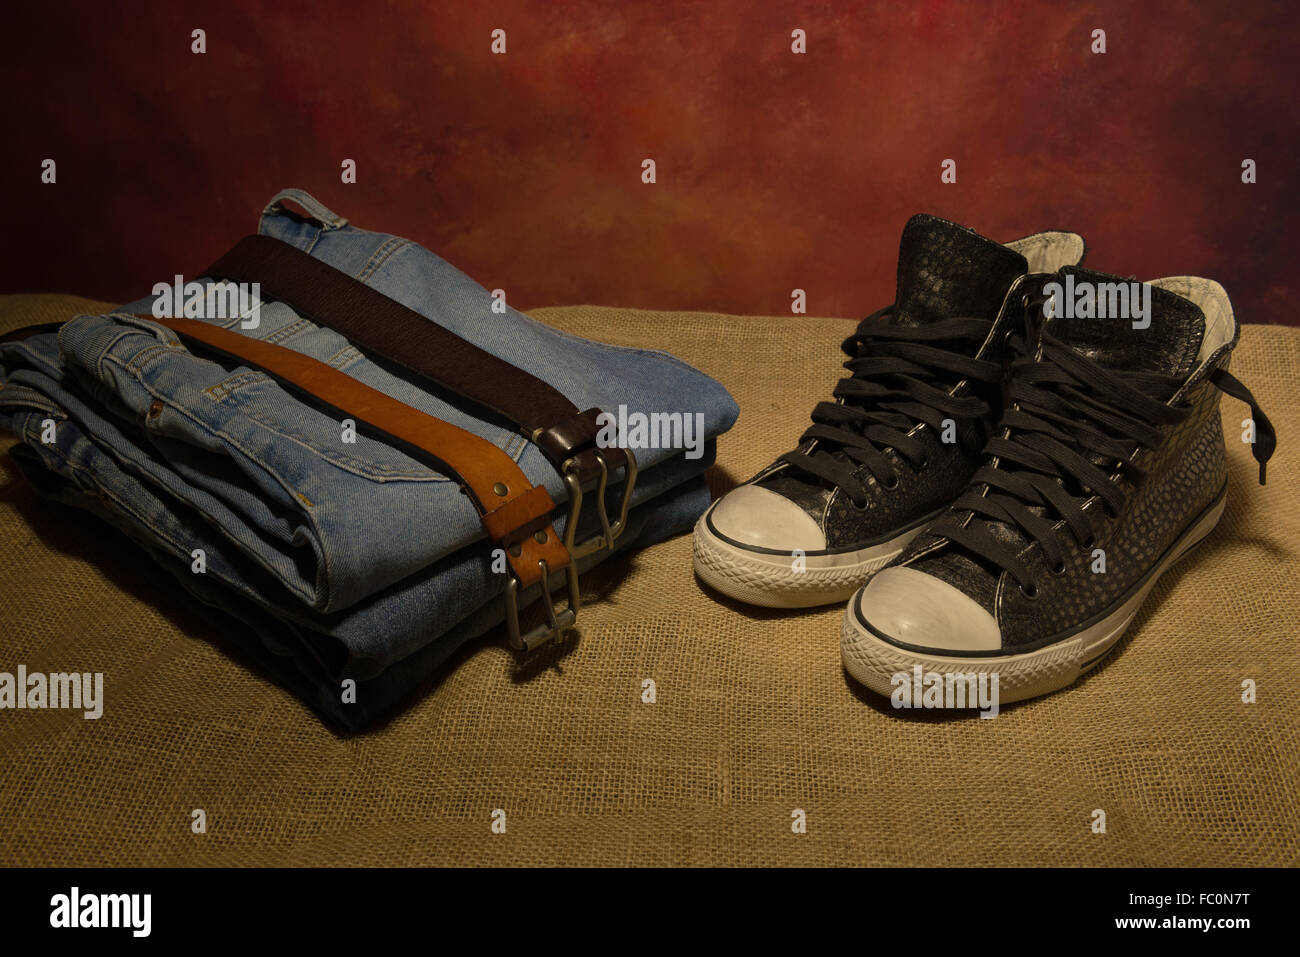 Still life hombres accesorios, zapatos negros, correa de cuero marrón, pantalones vaqueros, botas Foto de stock